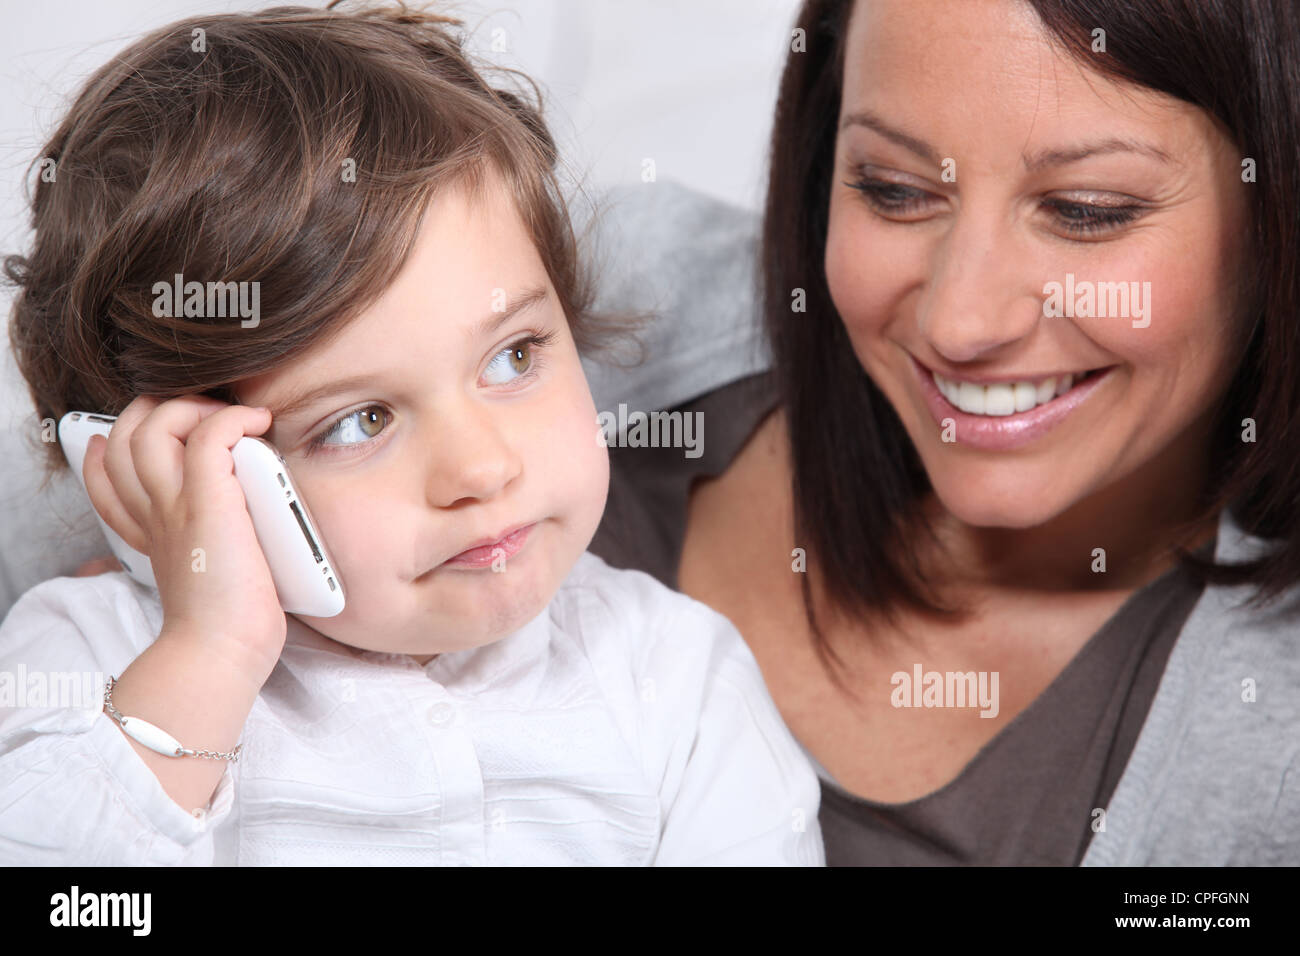 Она у мамы в телефоне. Мама с телефоном. Фото с маминого телефона. Картинки на телефон мама с детьми. Ребенок играющий и мама с телефоном.